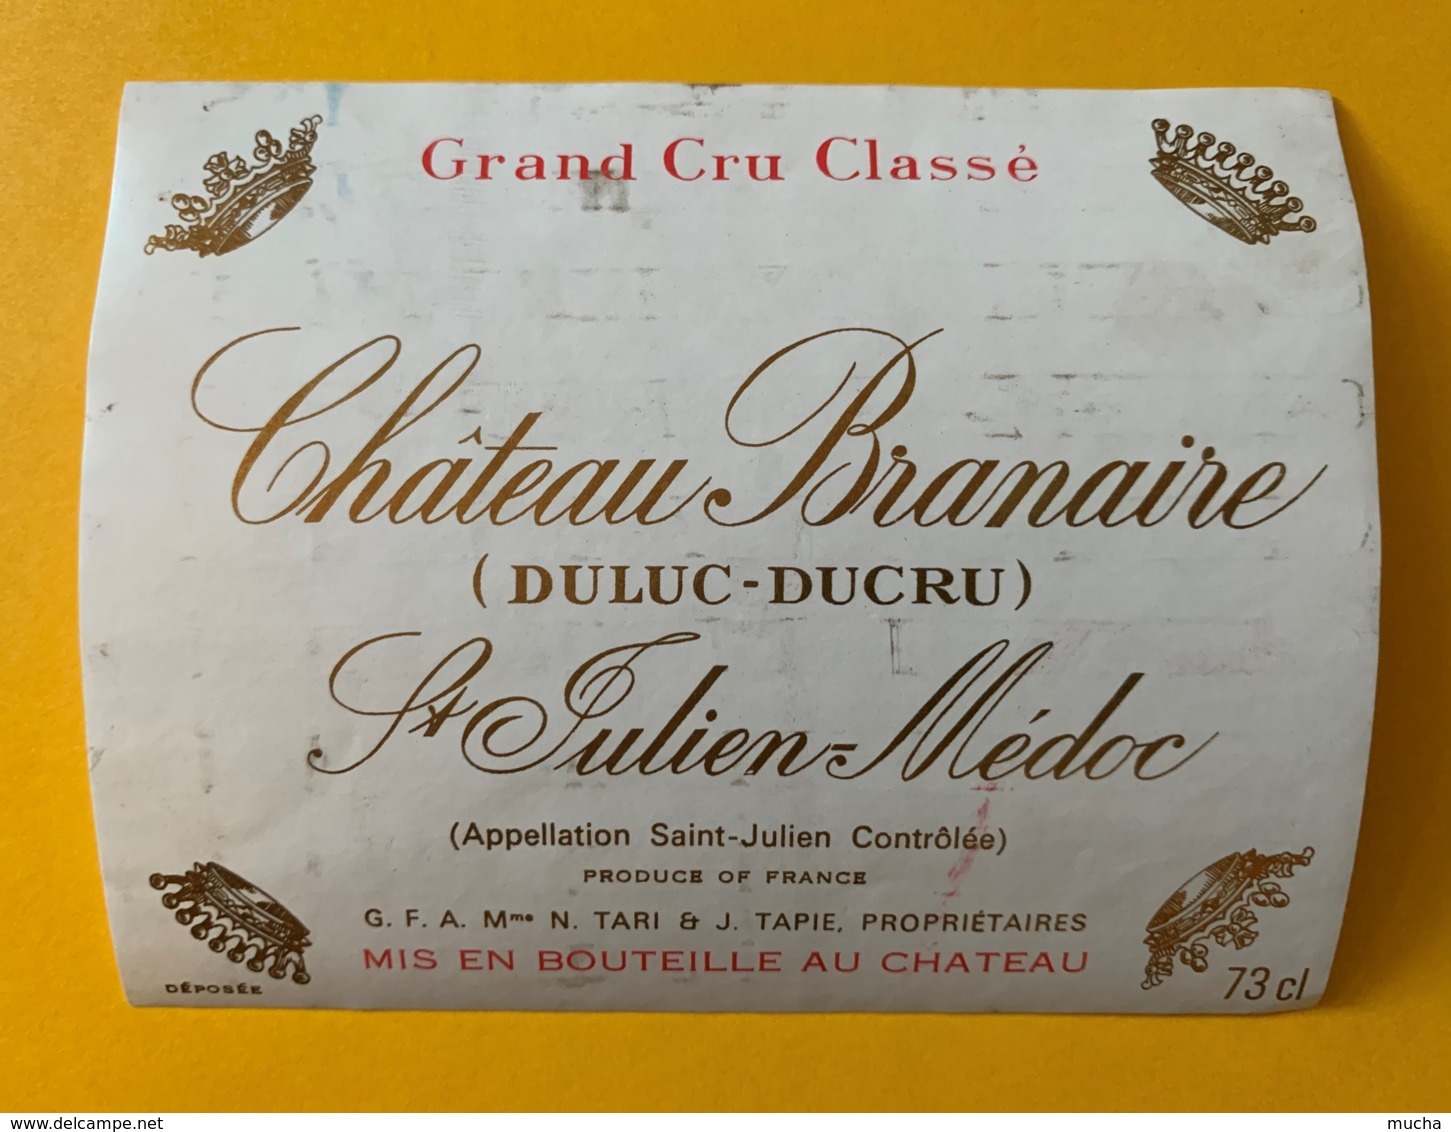 9551 - Château Branaire (DuLuc-Ducru) St-Julien - Bordeaux